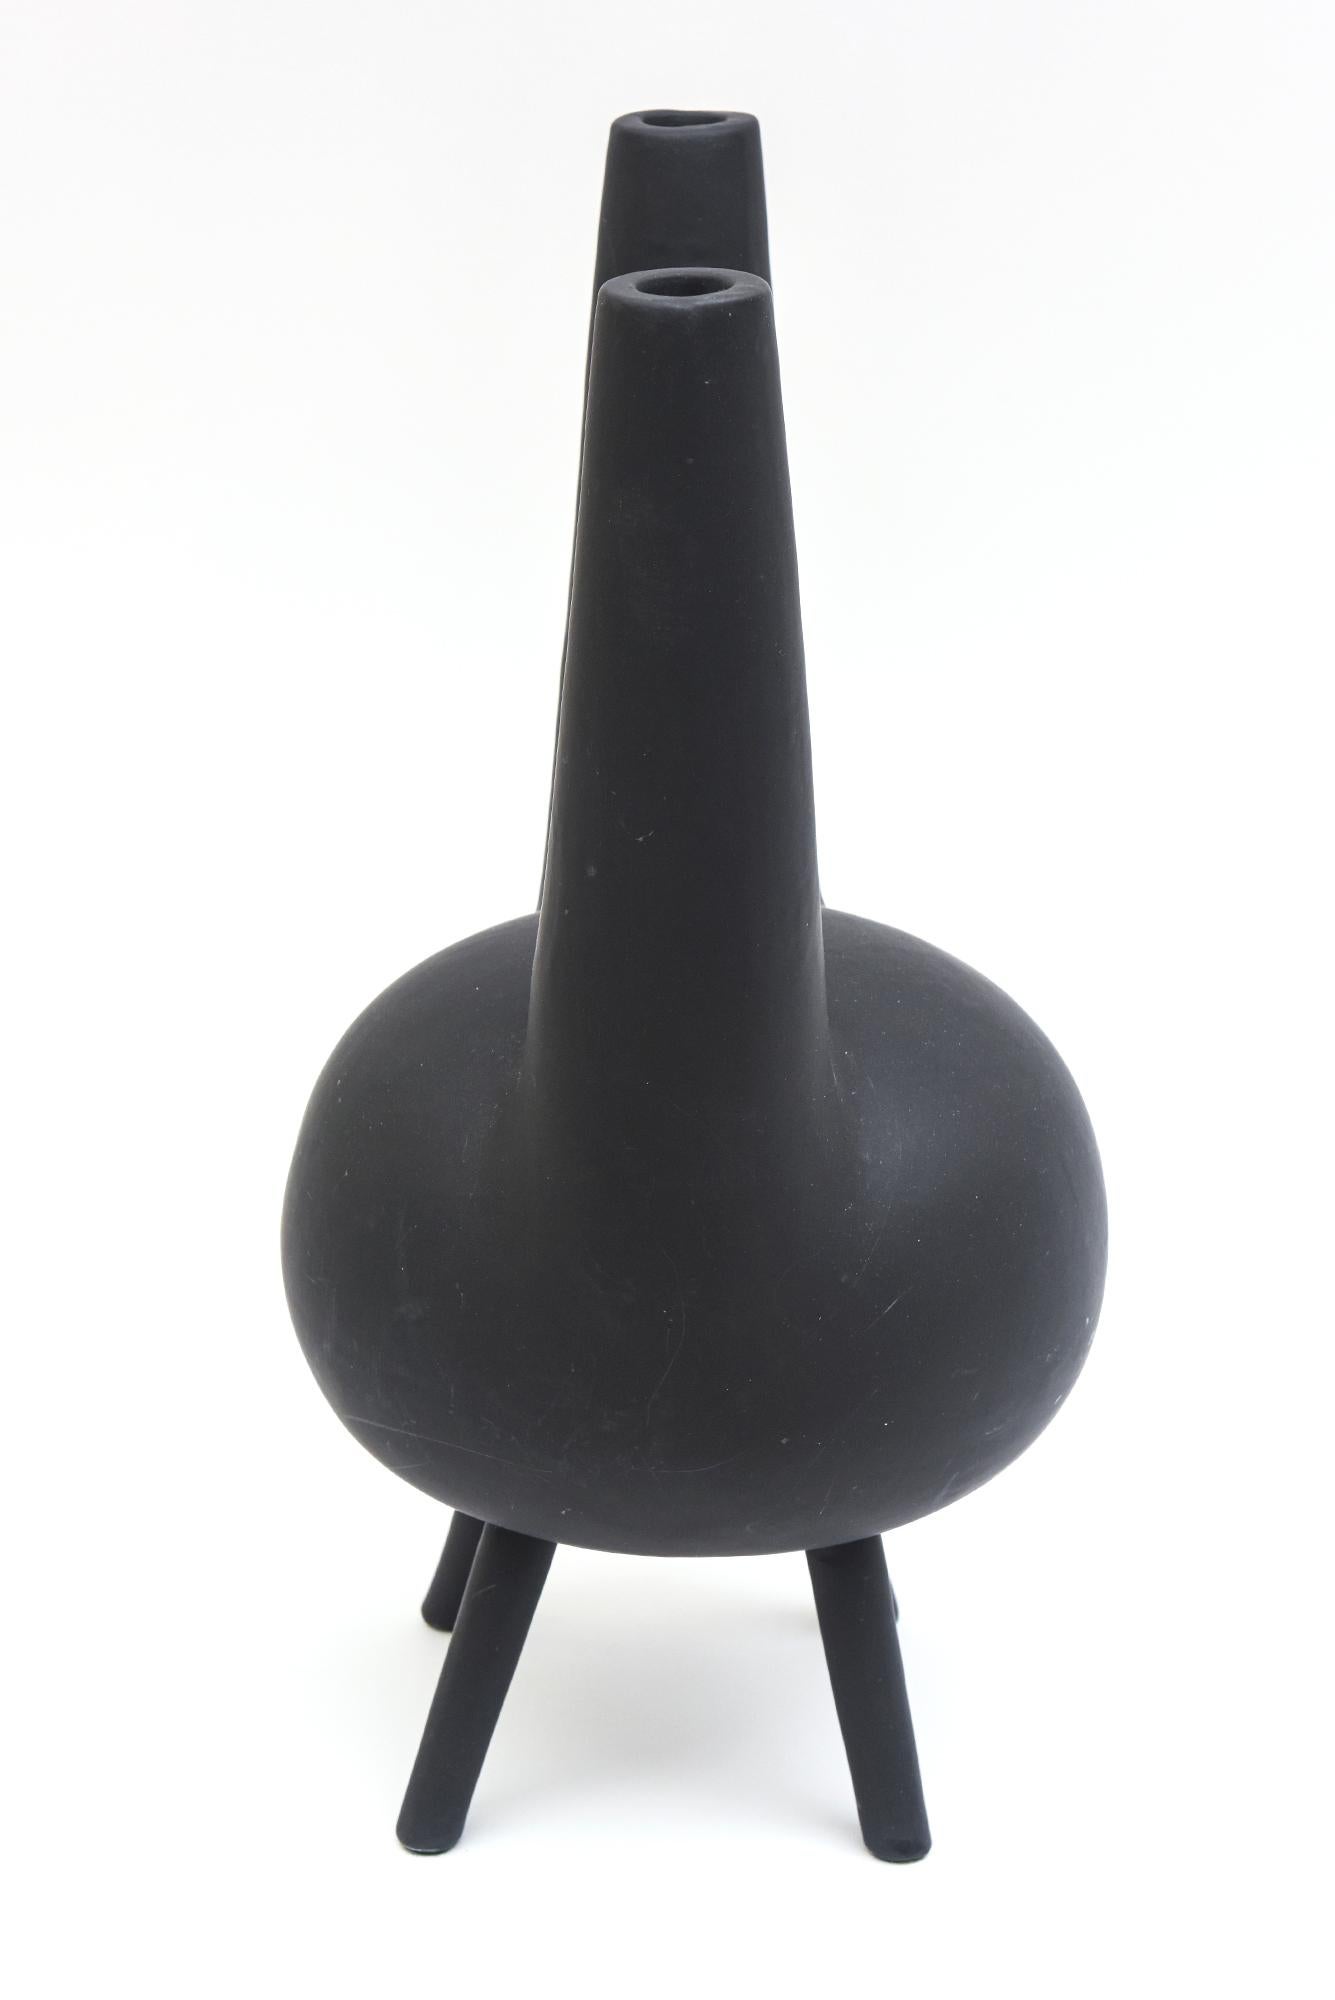  Pampaloni Gio Ponti Design Black Matt Ceramic Abstract Vessel Sculpture Italian In Good Condition In North Miami, FL